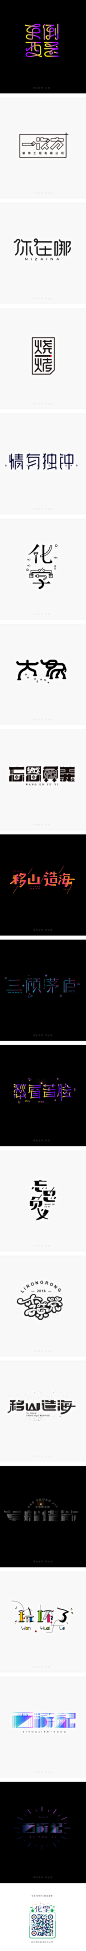 2016年4月字体设计字形合集2-张家佳课游视界-字体传奇网-中国首个字体品牌设计师交流网